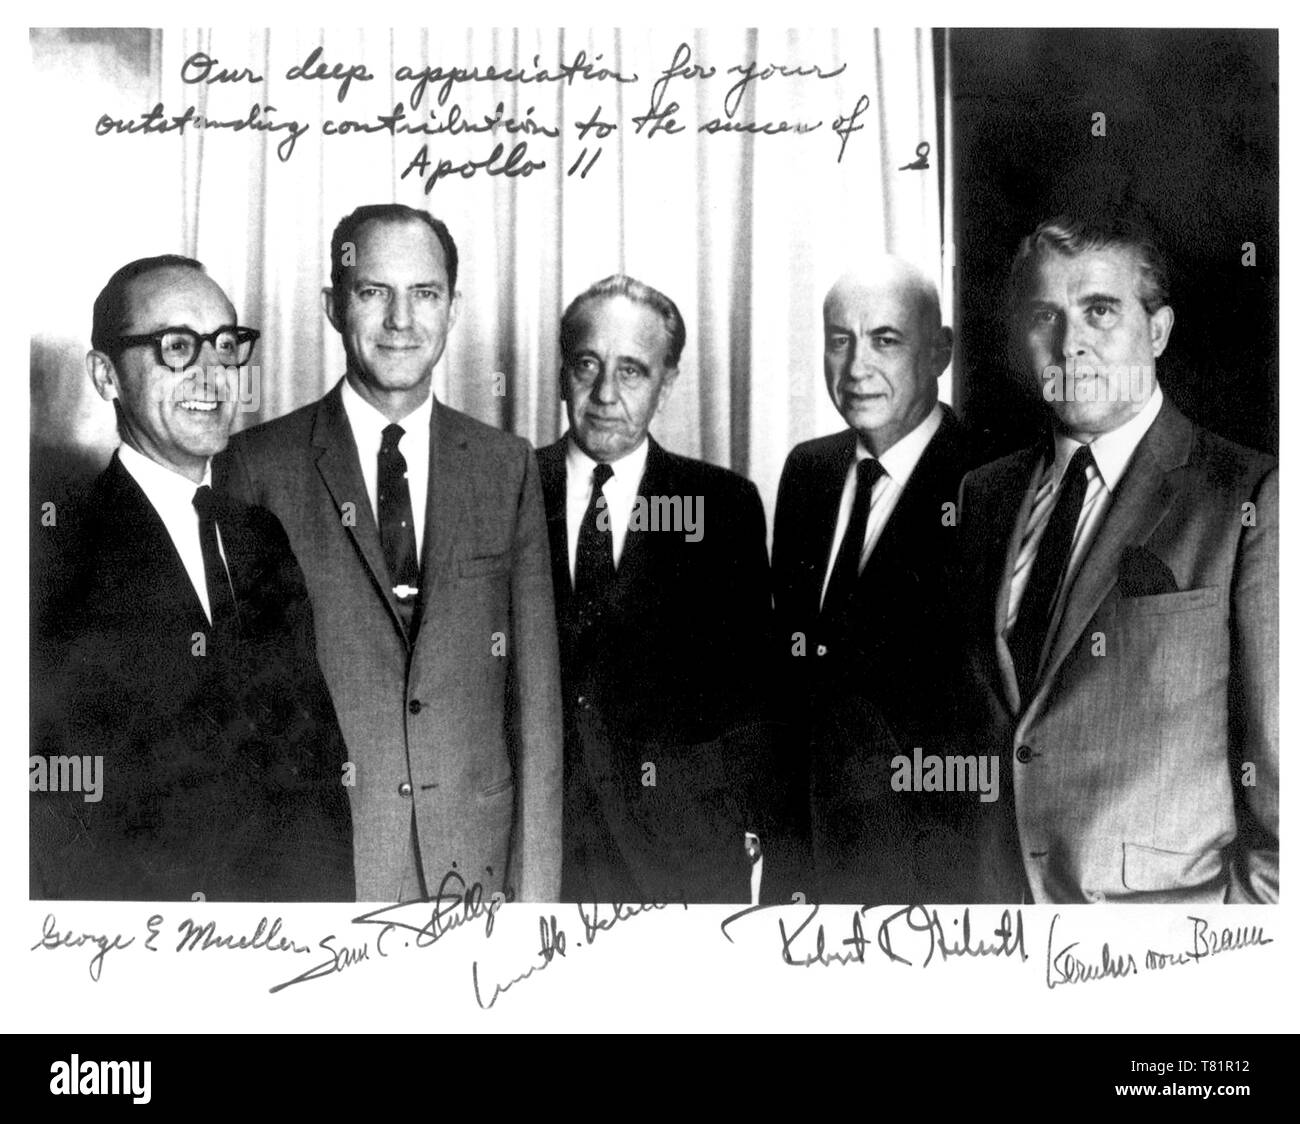 Apollo Space Program Leaders Stock Photo